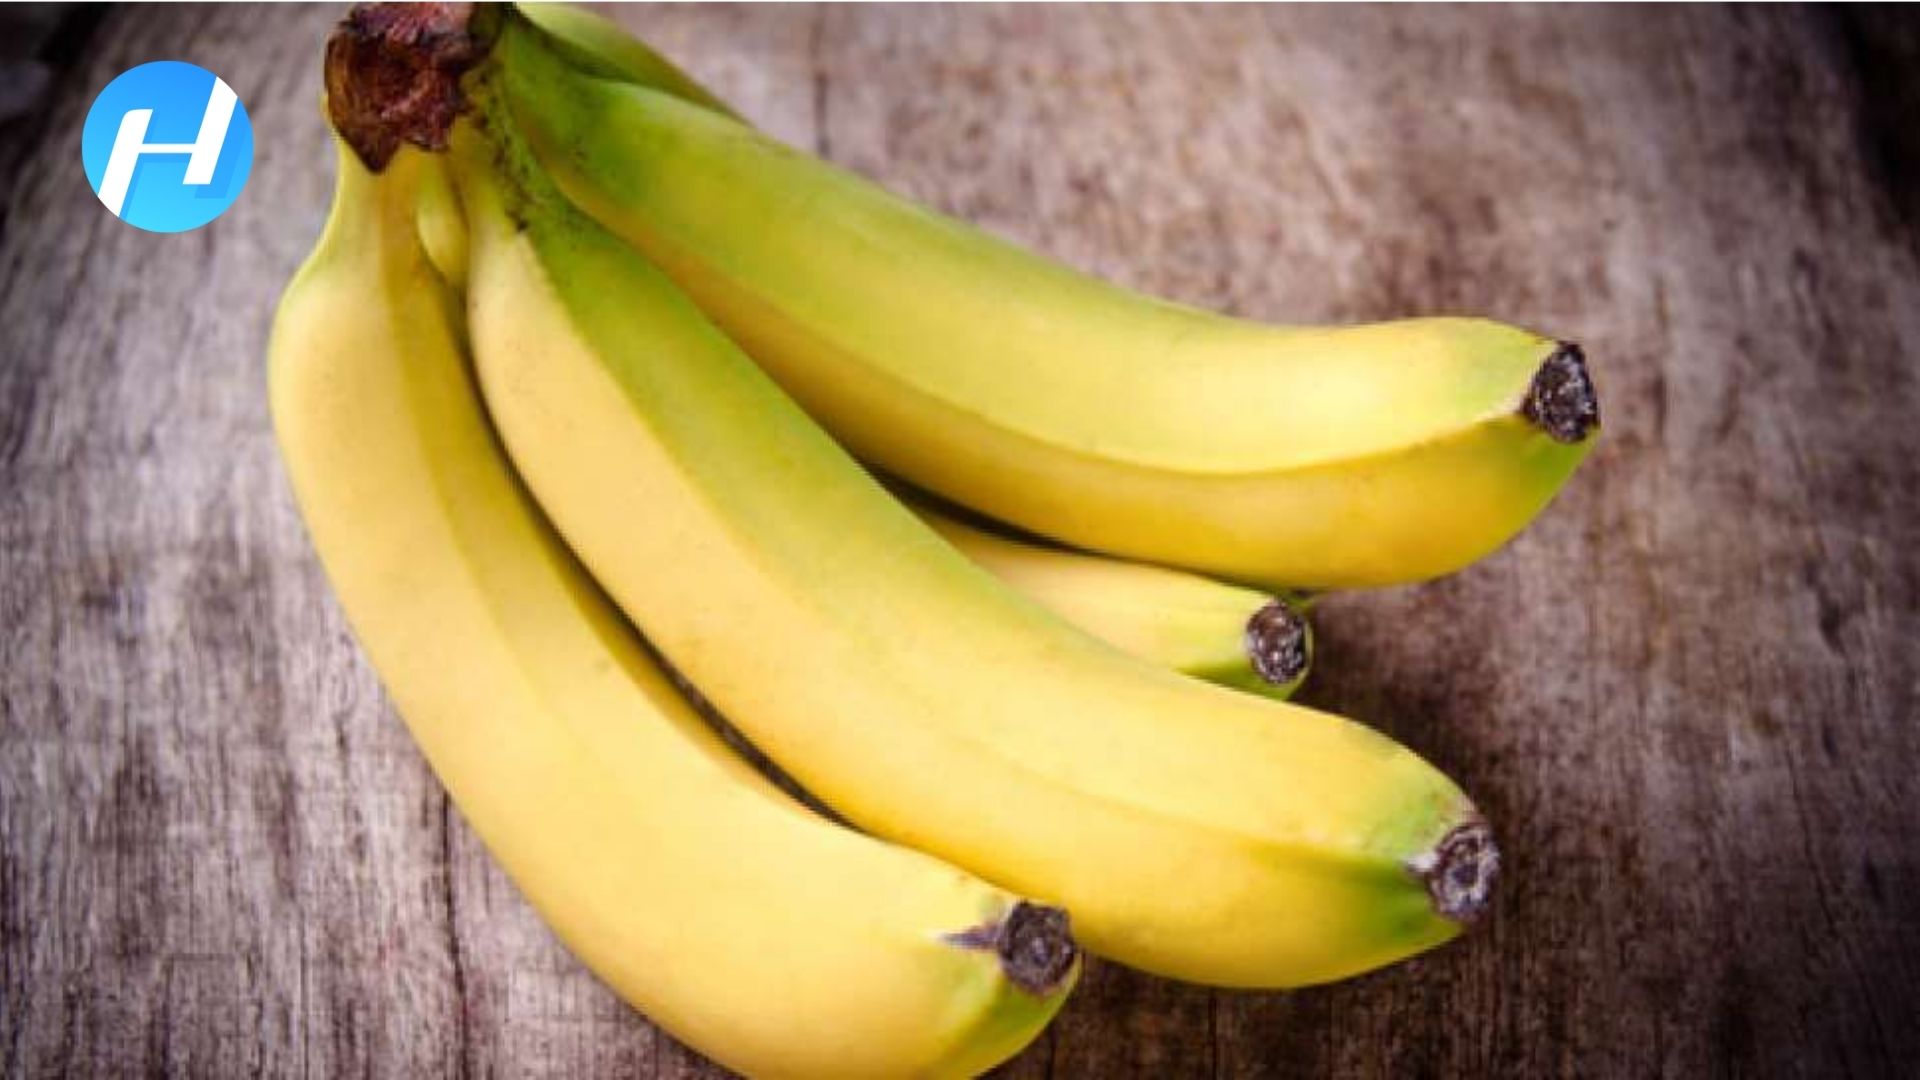 manfaat pisang ambon untuk kesehatan